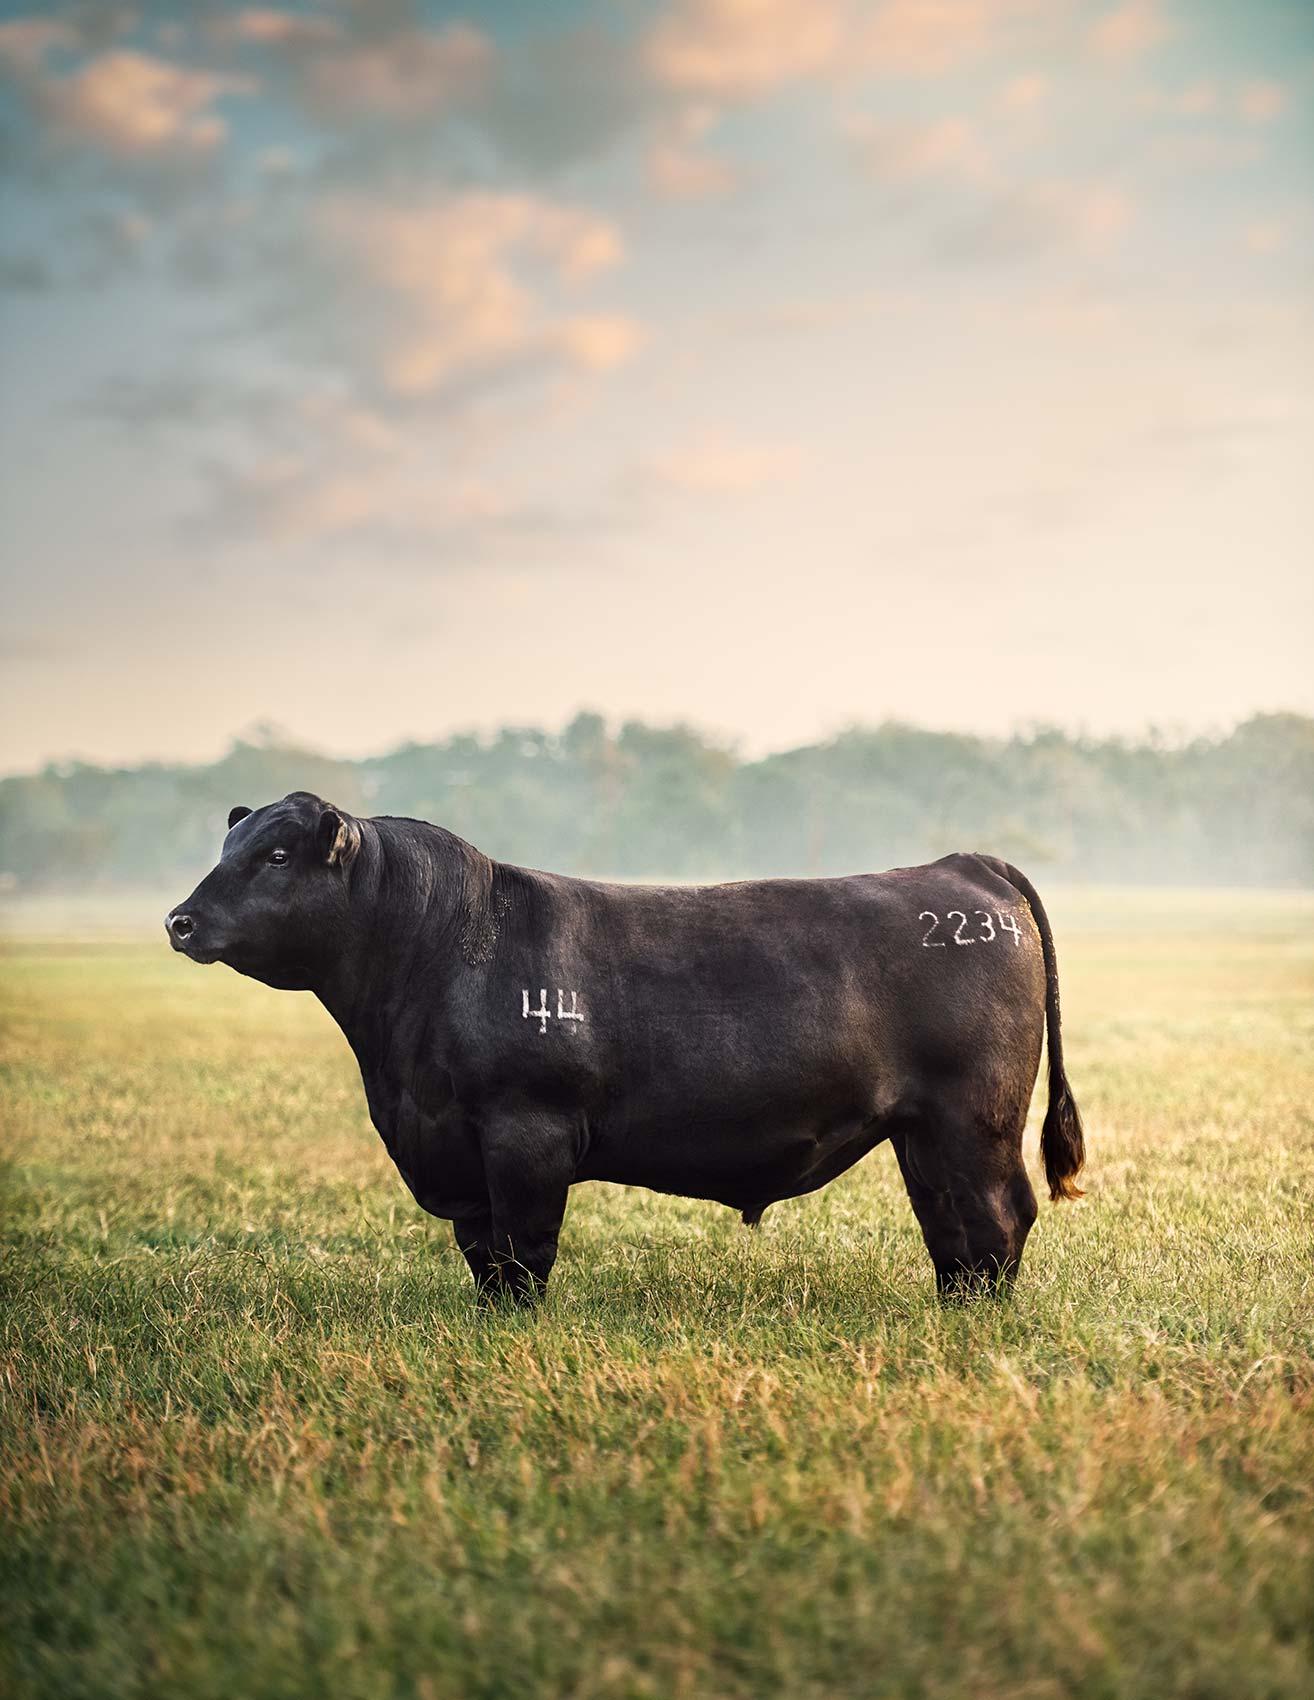 Randal Ford - True Bull at Dawn, photographie 2023, imprimée d'après